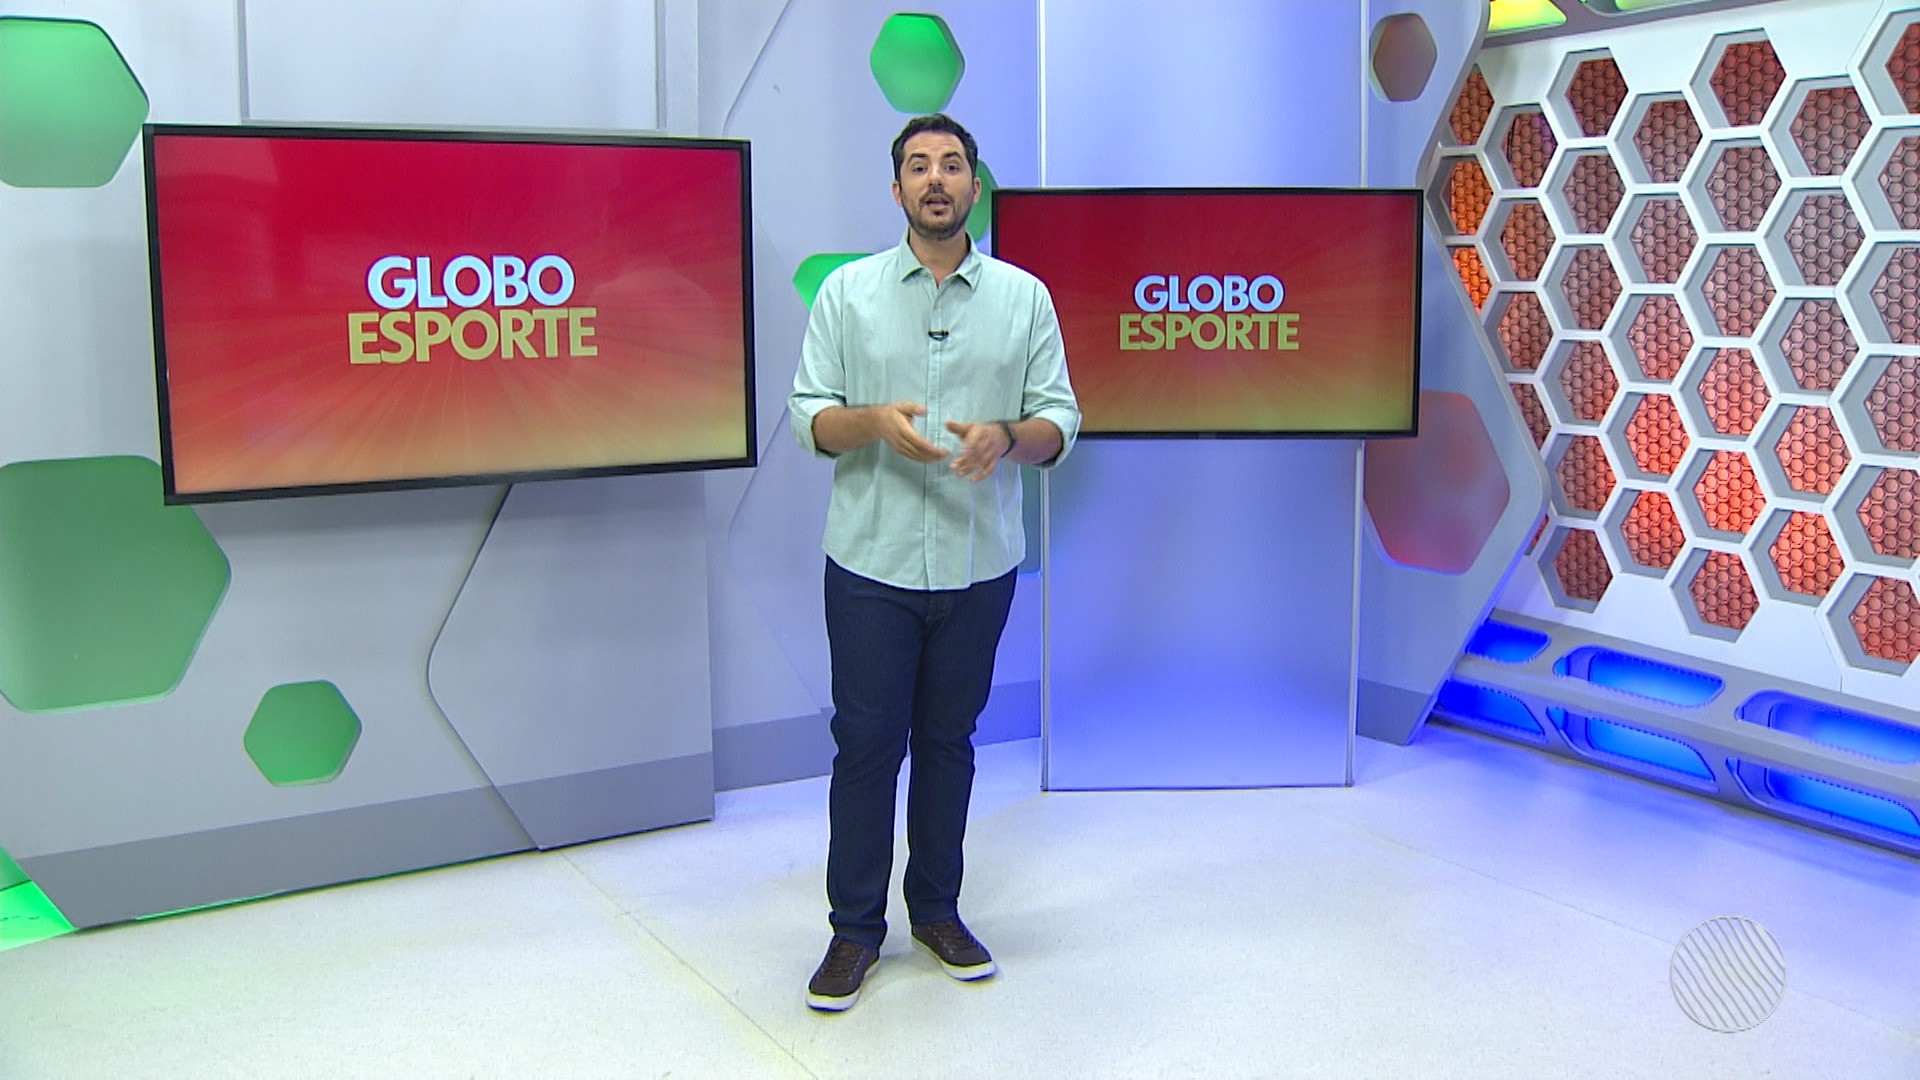 Secar o Cruzeiro ○ Reprodução do programa Globo Esporte Bahia produz